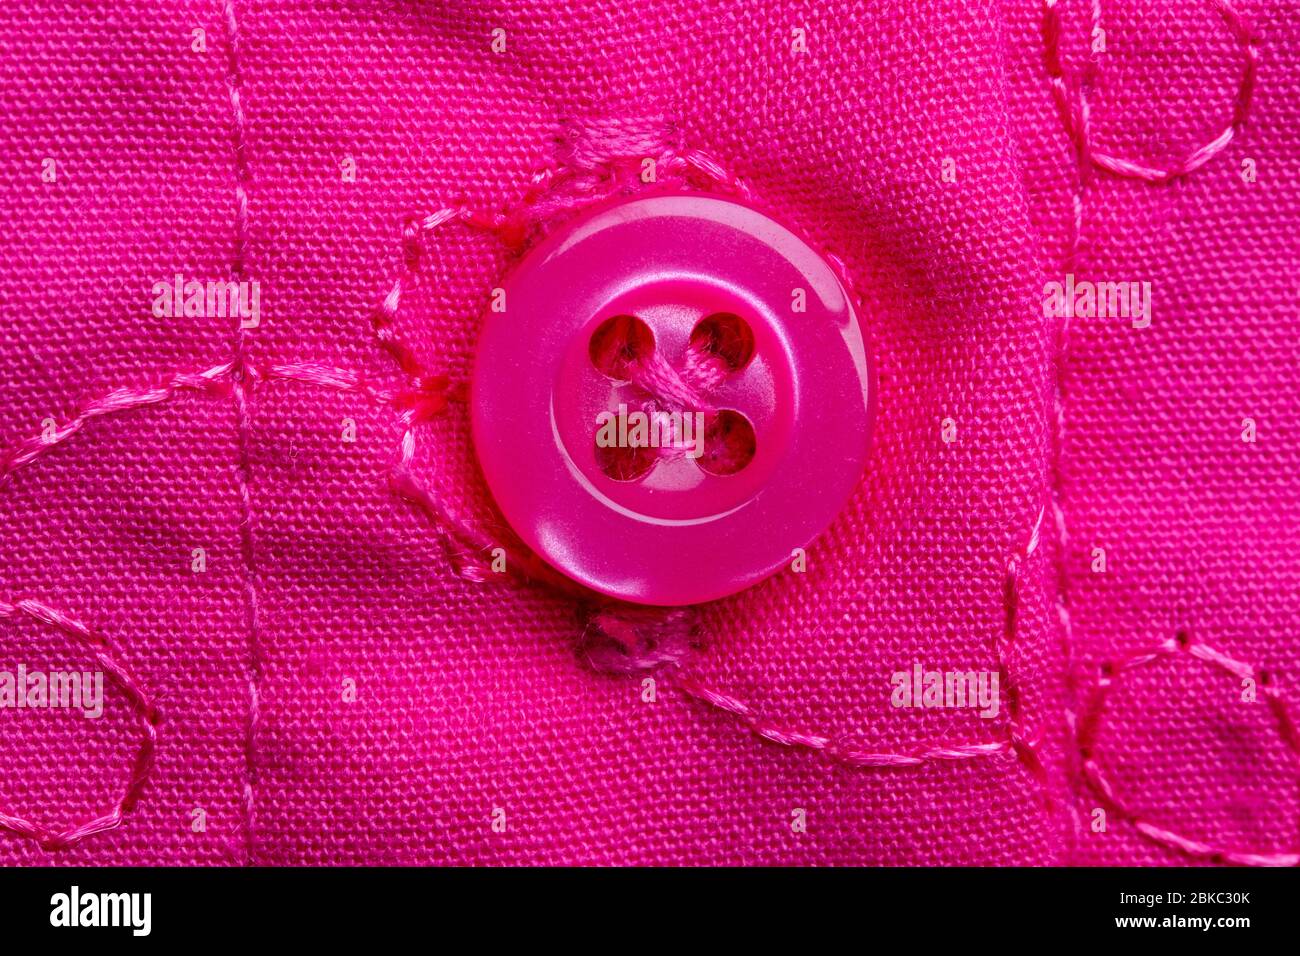 Macro photographie d'un bouton rose cousu sur un tissu rose avec broderie. Détail gros plan d'une petite robe pour filles. Banque D'Images